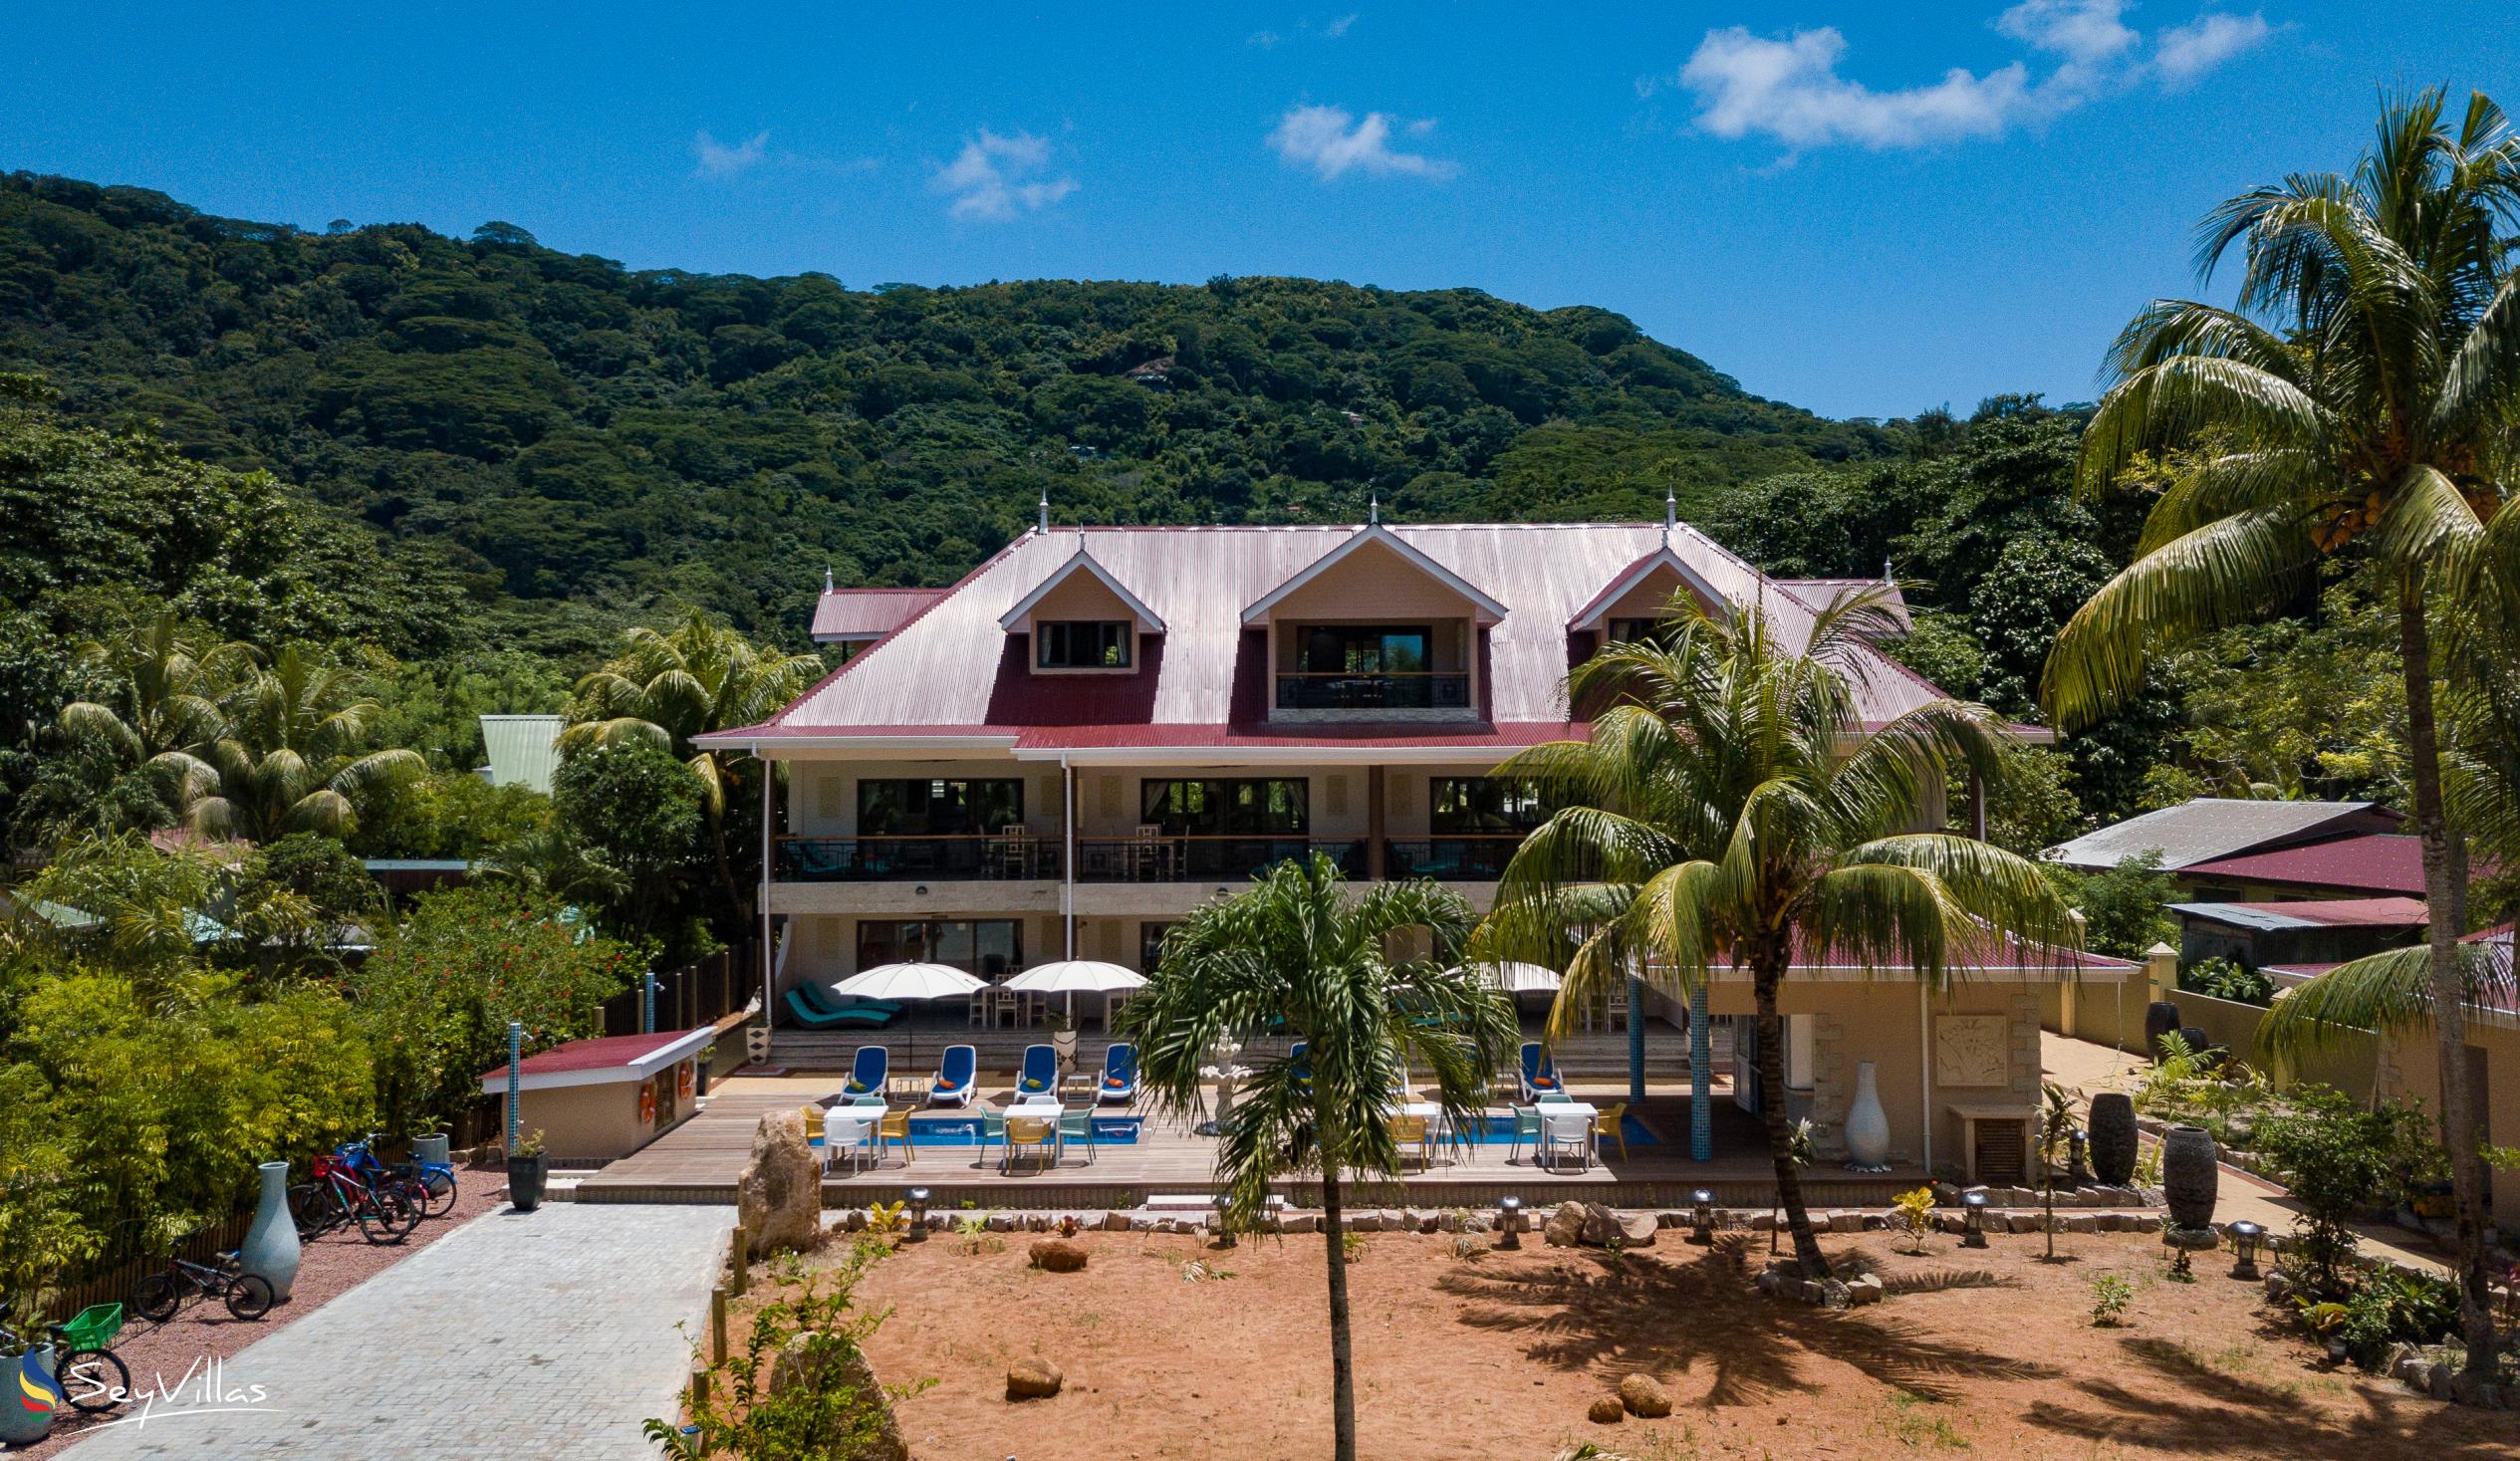 Photo 136: Casa de Leela - Penthouse Apartment - La Digue (Seychelles)